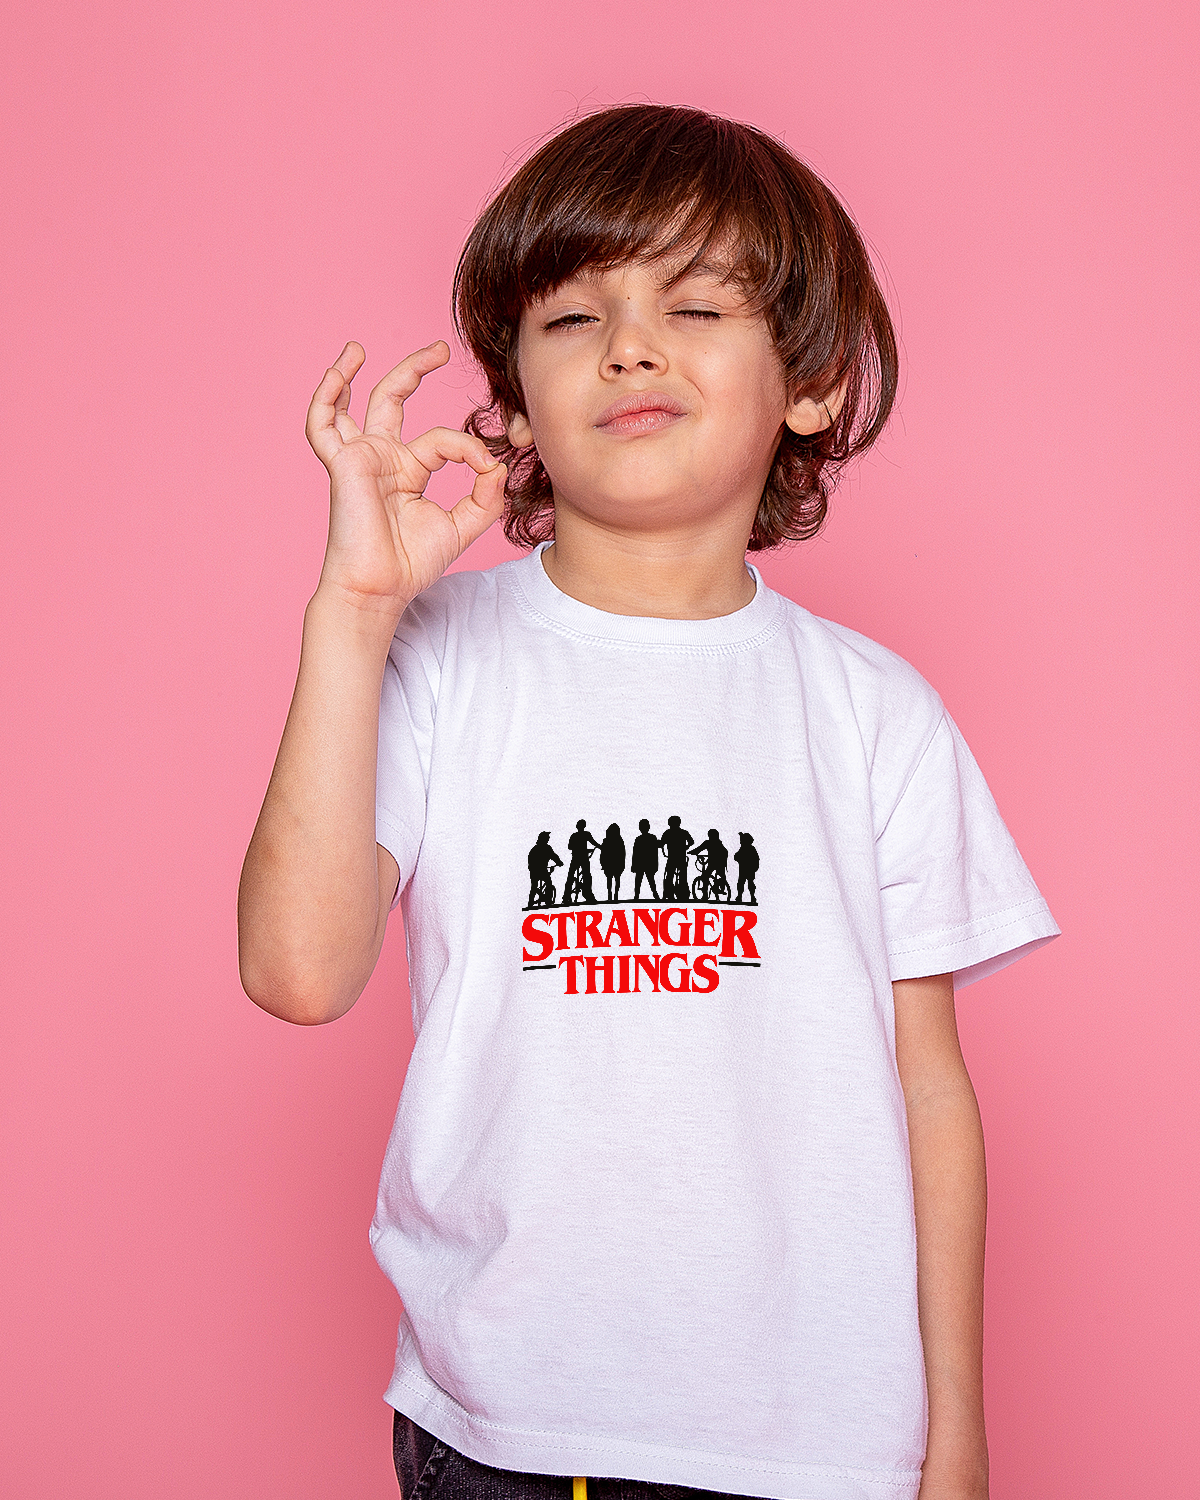 T-shirt For Boys (Stranger Things)